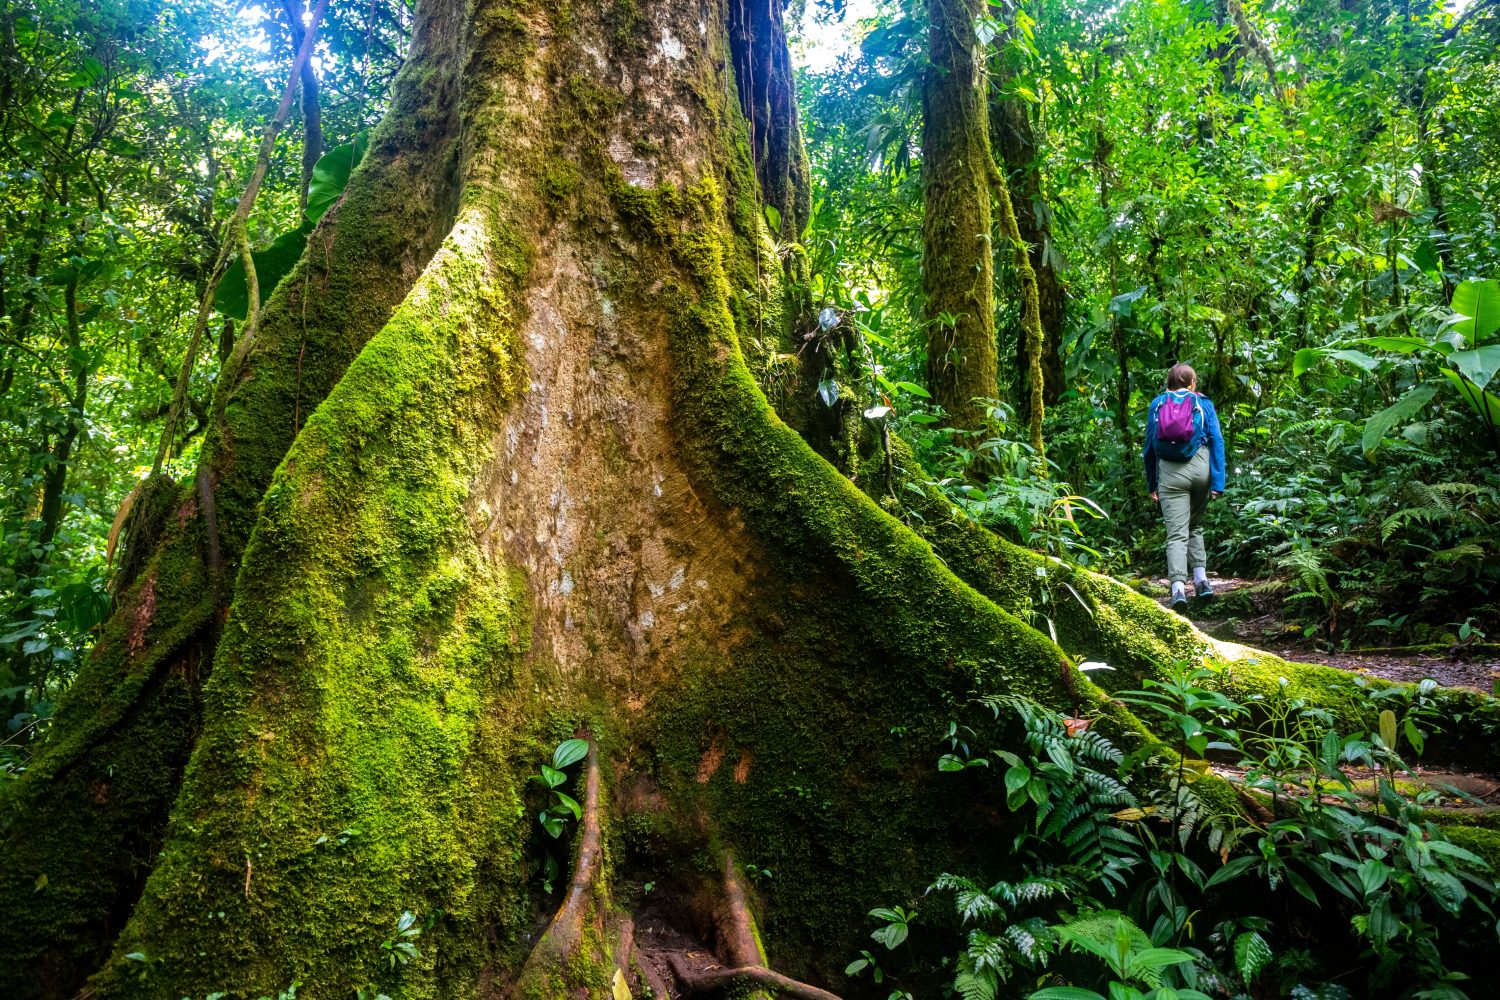 una ragazza con lo zaino in spalla cammina attraverso la fitta giungla nella foresta nebbiosa di Monteverde, Costa Rica;  camminare attraverso la fiaba, la magica foresta pluviale tropicale;  natura selvaggia del Costa Rica	